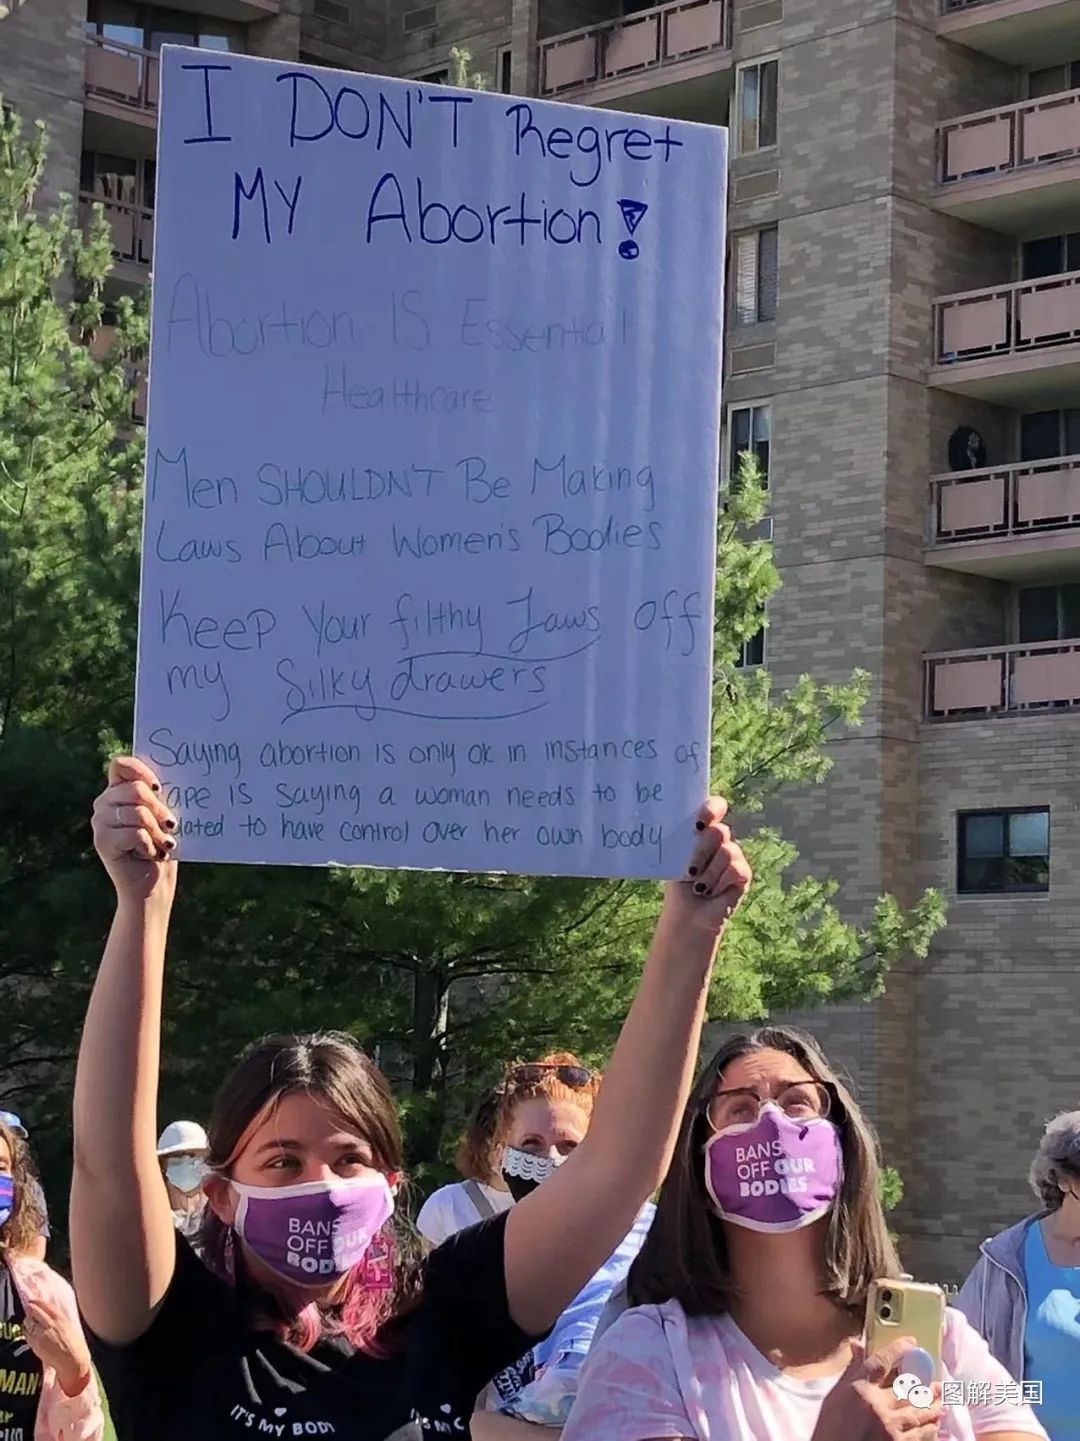 我的身体我做主！全美女性大游行，抗议德州恶法 (多图/视频)